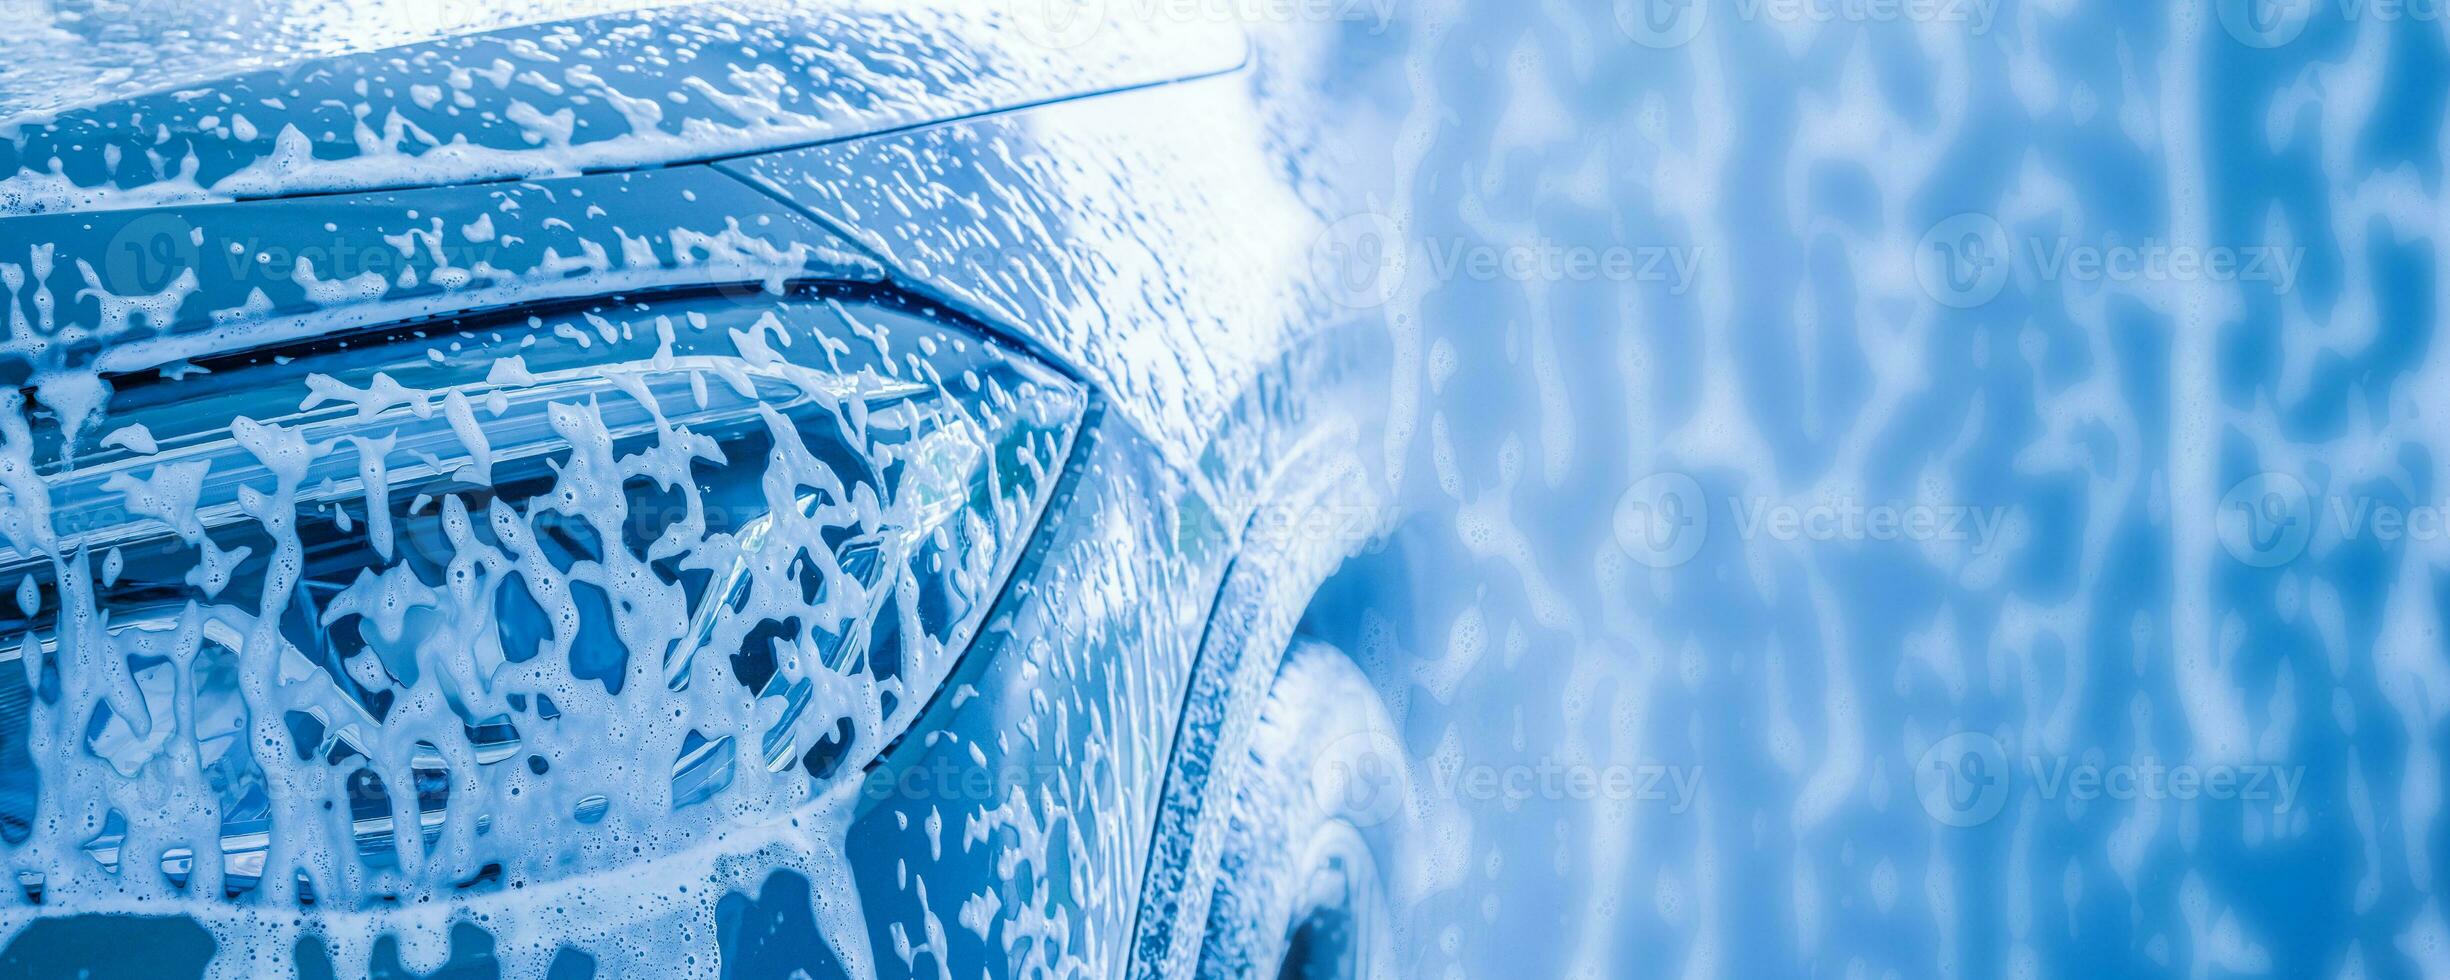 auto schoonmaak en het wassen met schuim zeep achtergrond foto